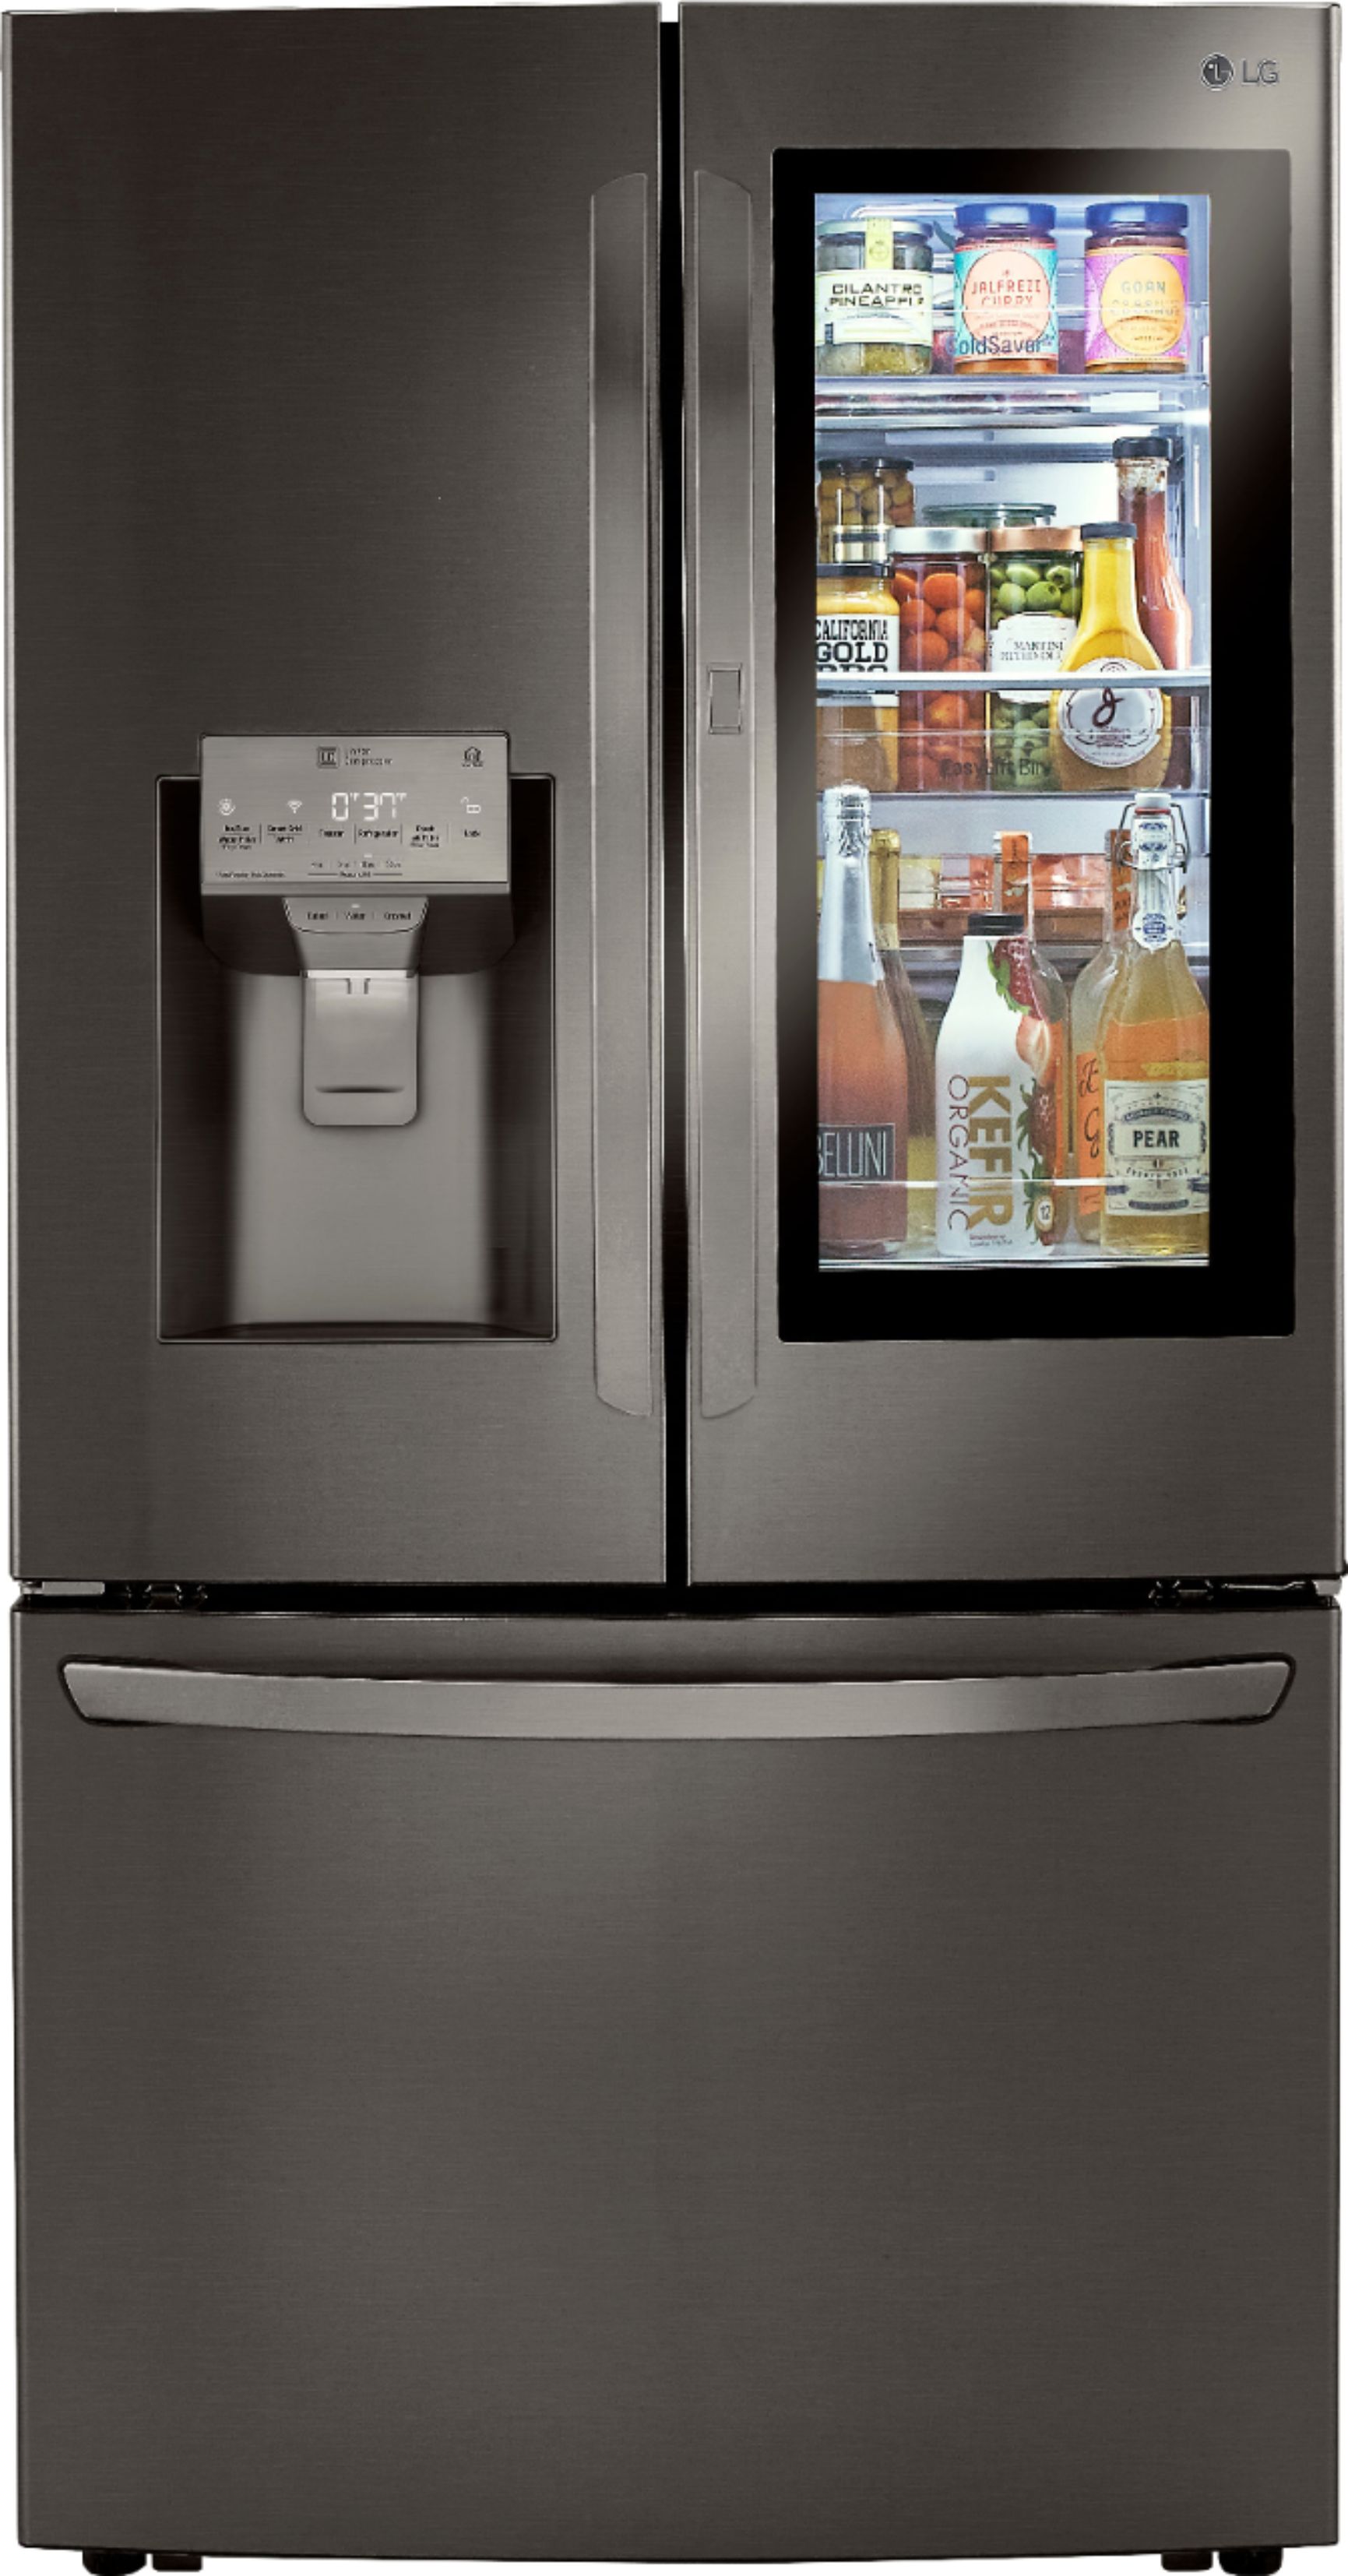 LG – 29.7 Cu. Ft. French InstaView Door-in-Door Refrigerator with Craft Ice – Black stainless steel